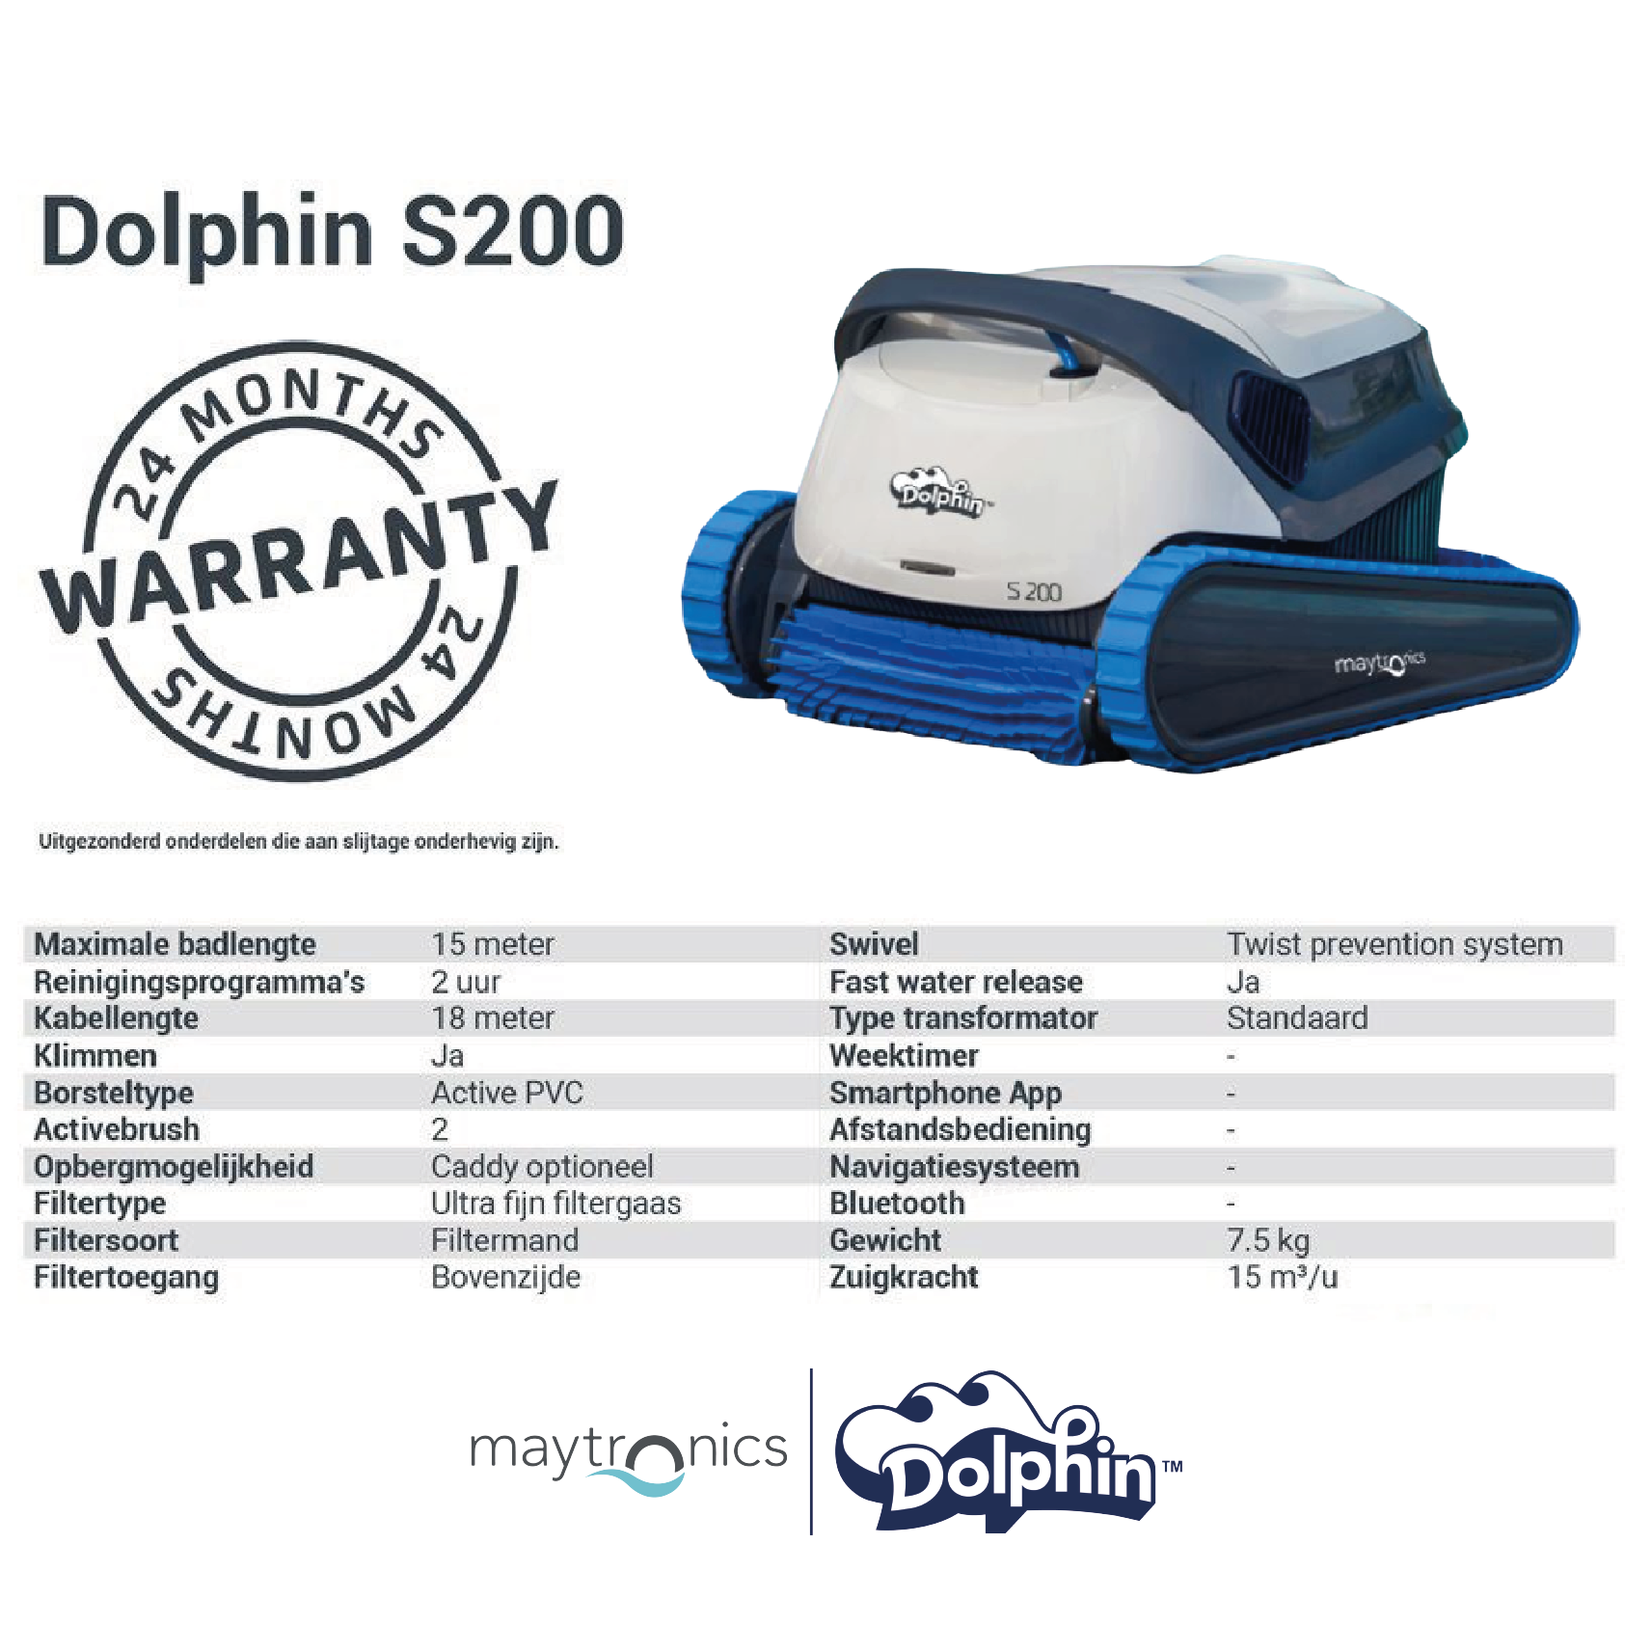 Dolphin S200 Zwembadrobot